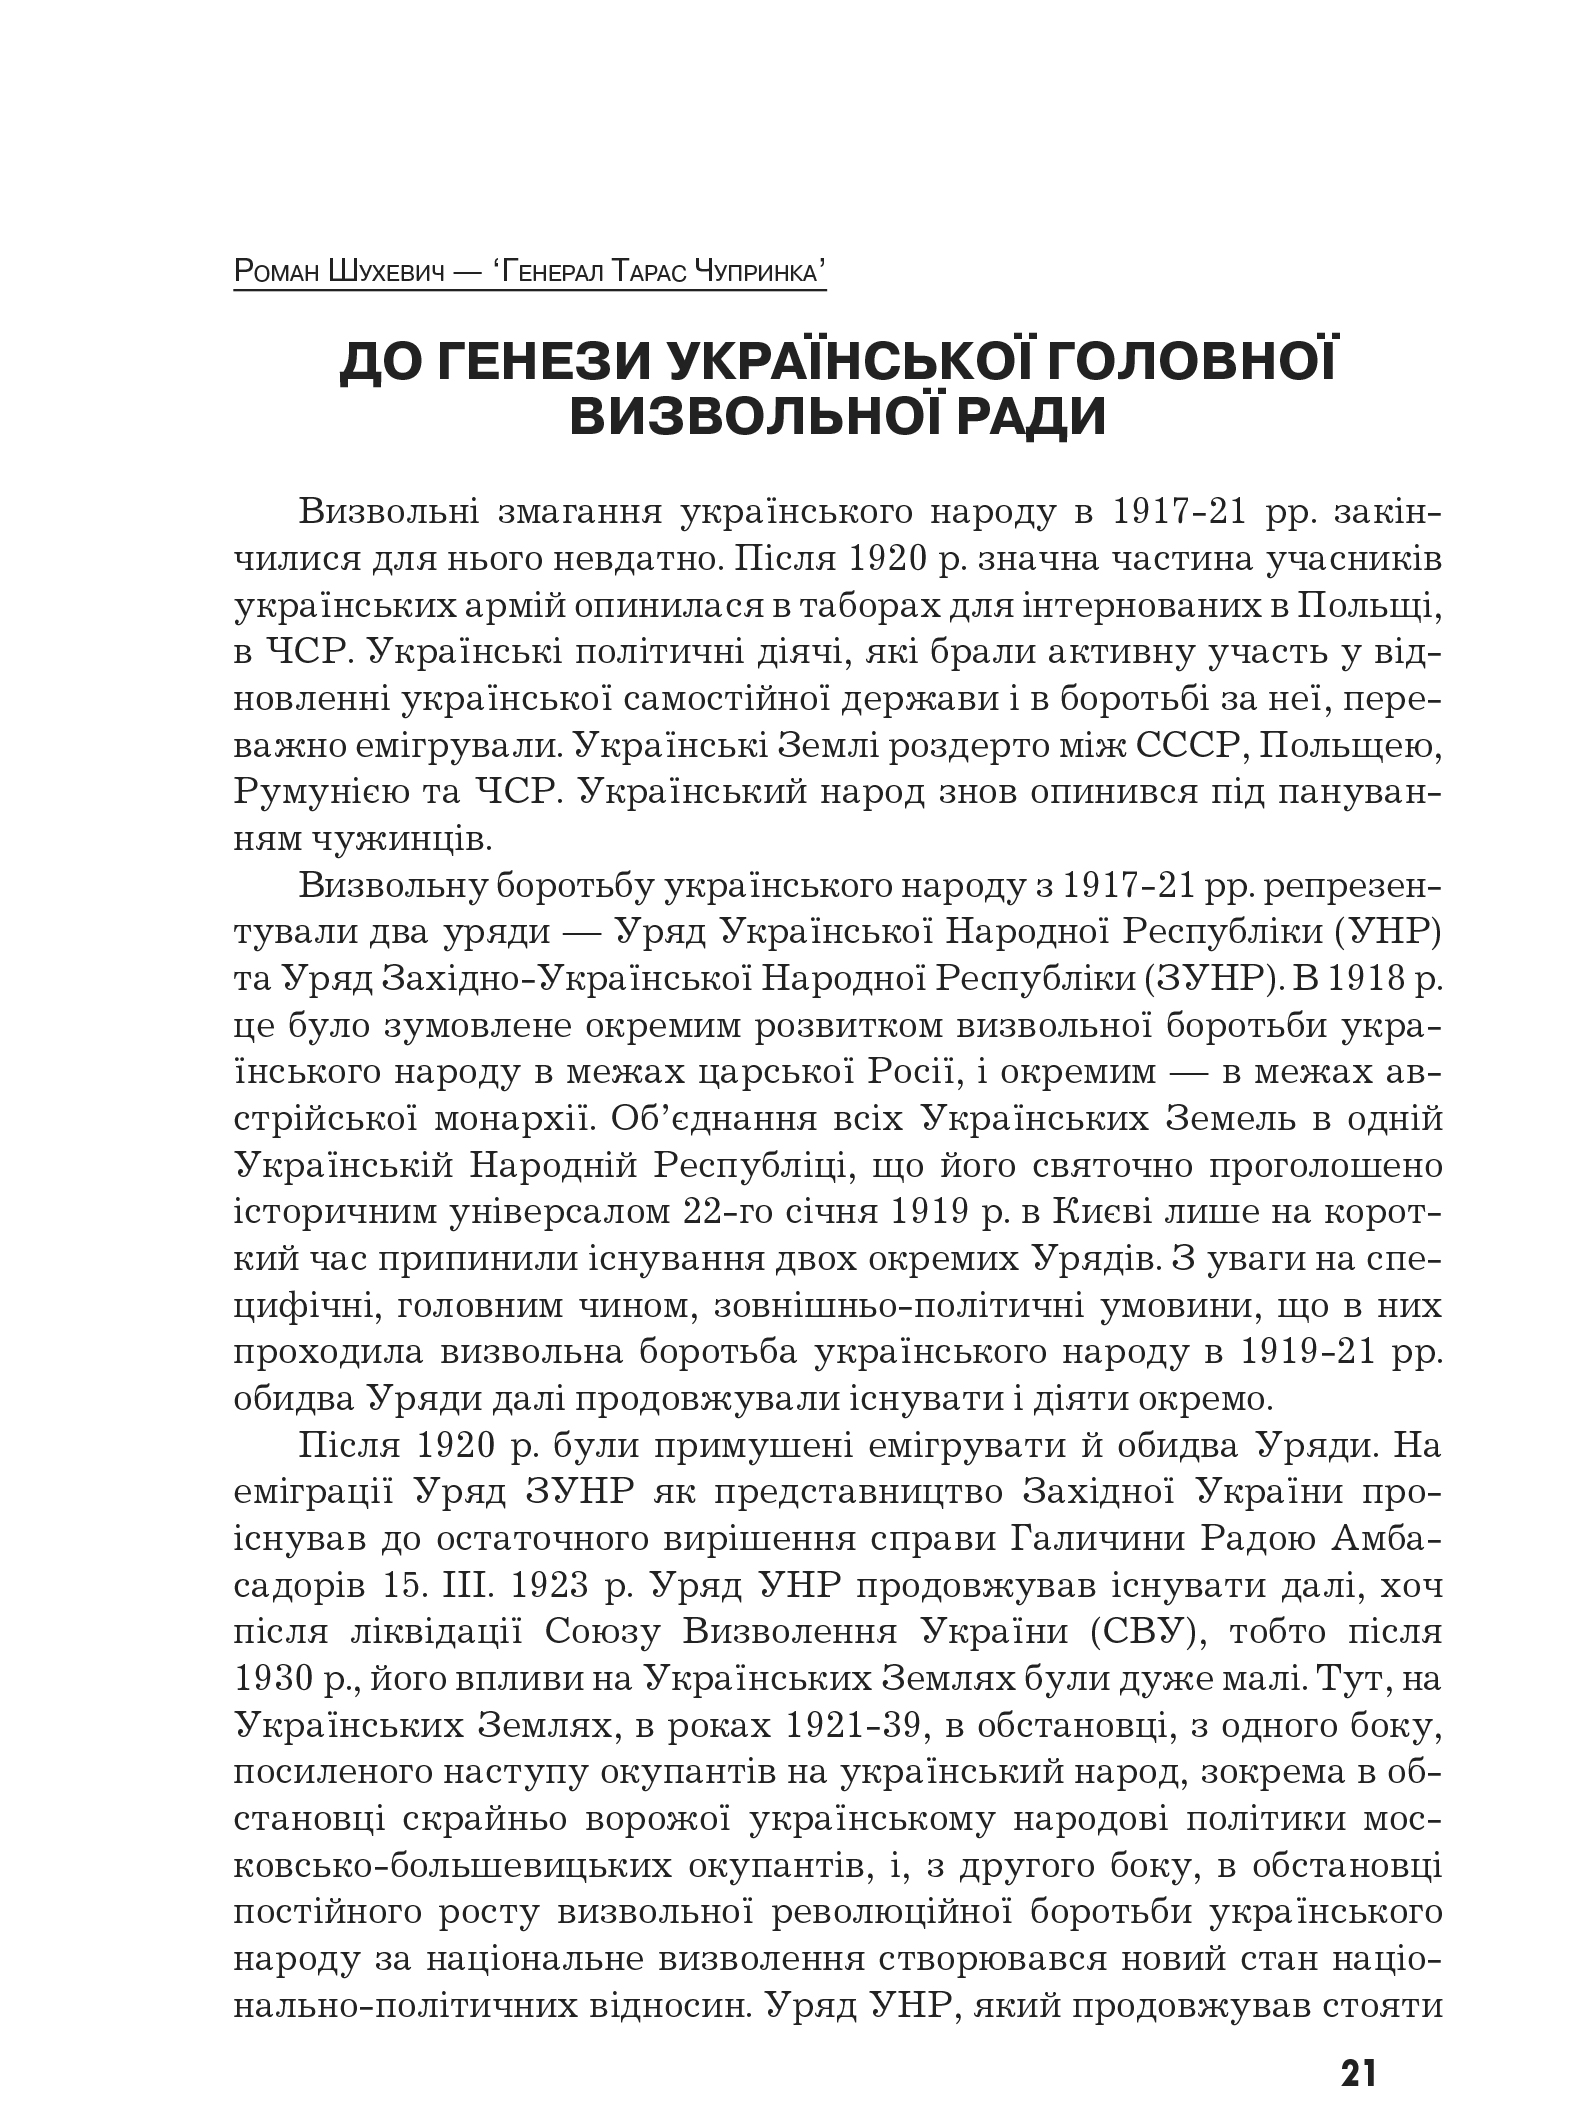 Український визвольний рух №10, ст. 21 - 33